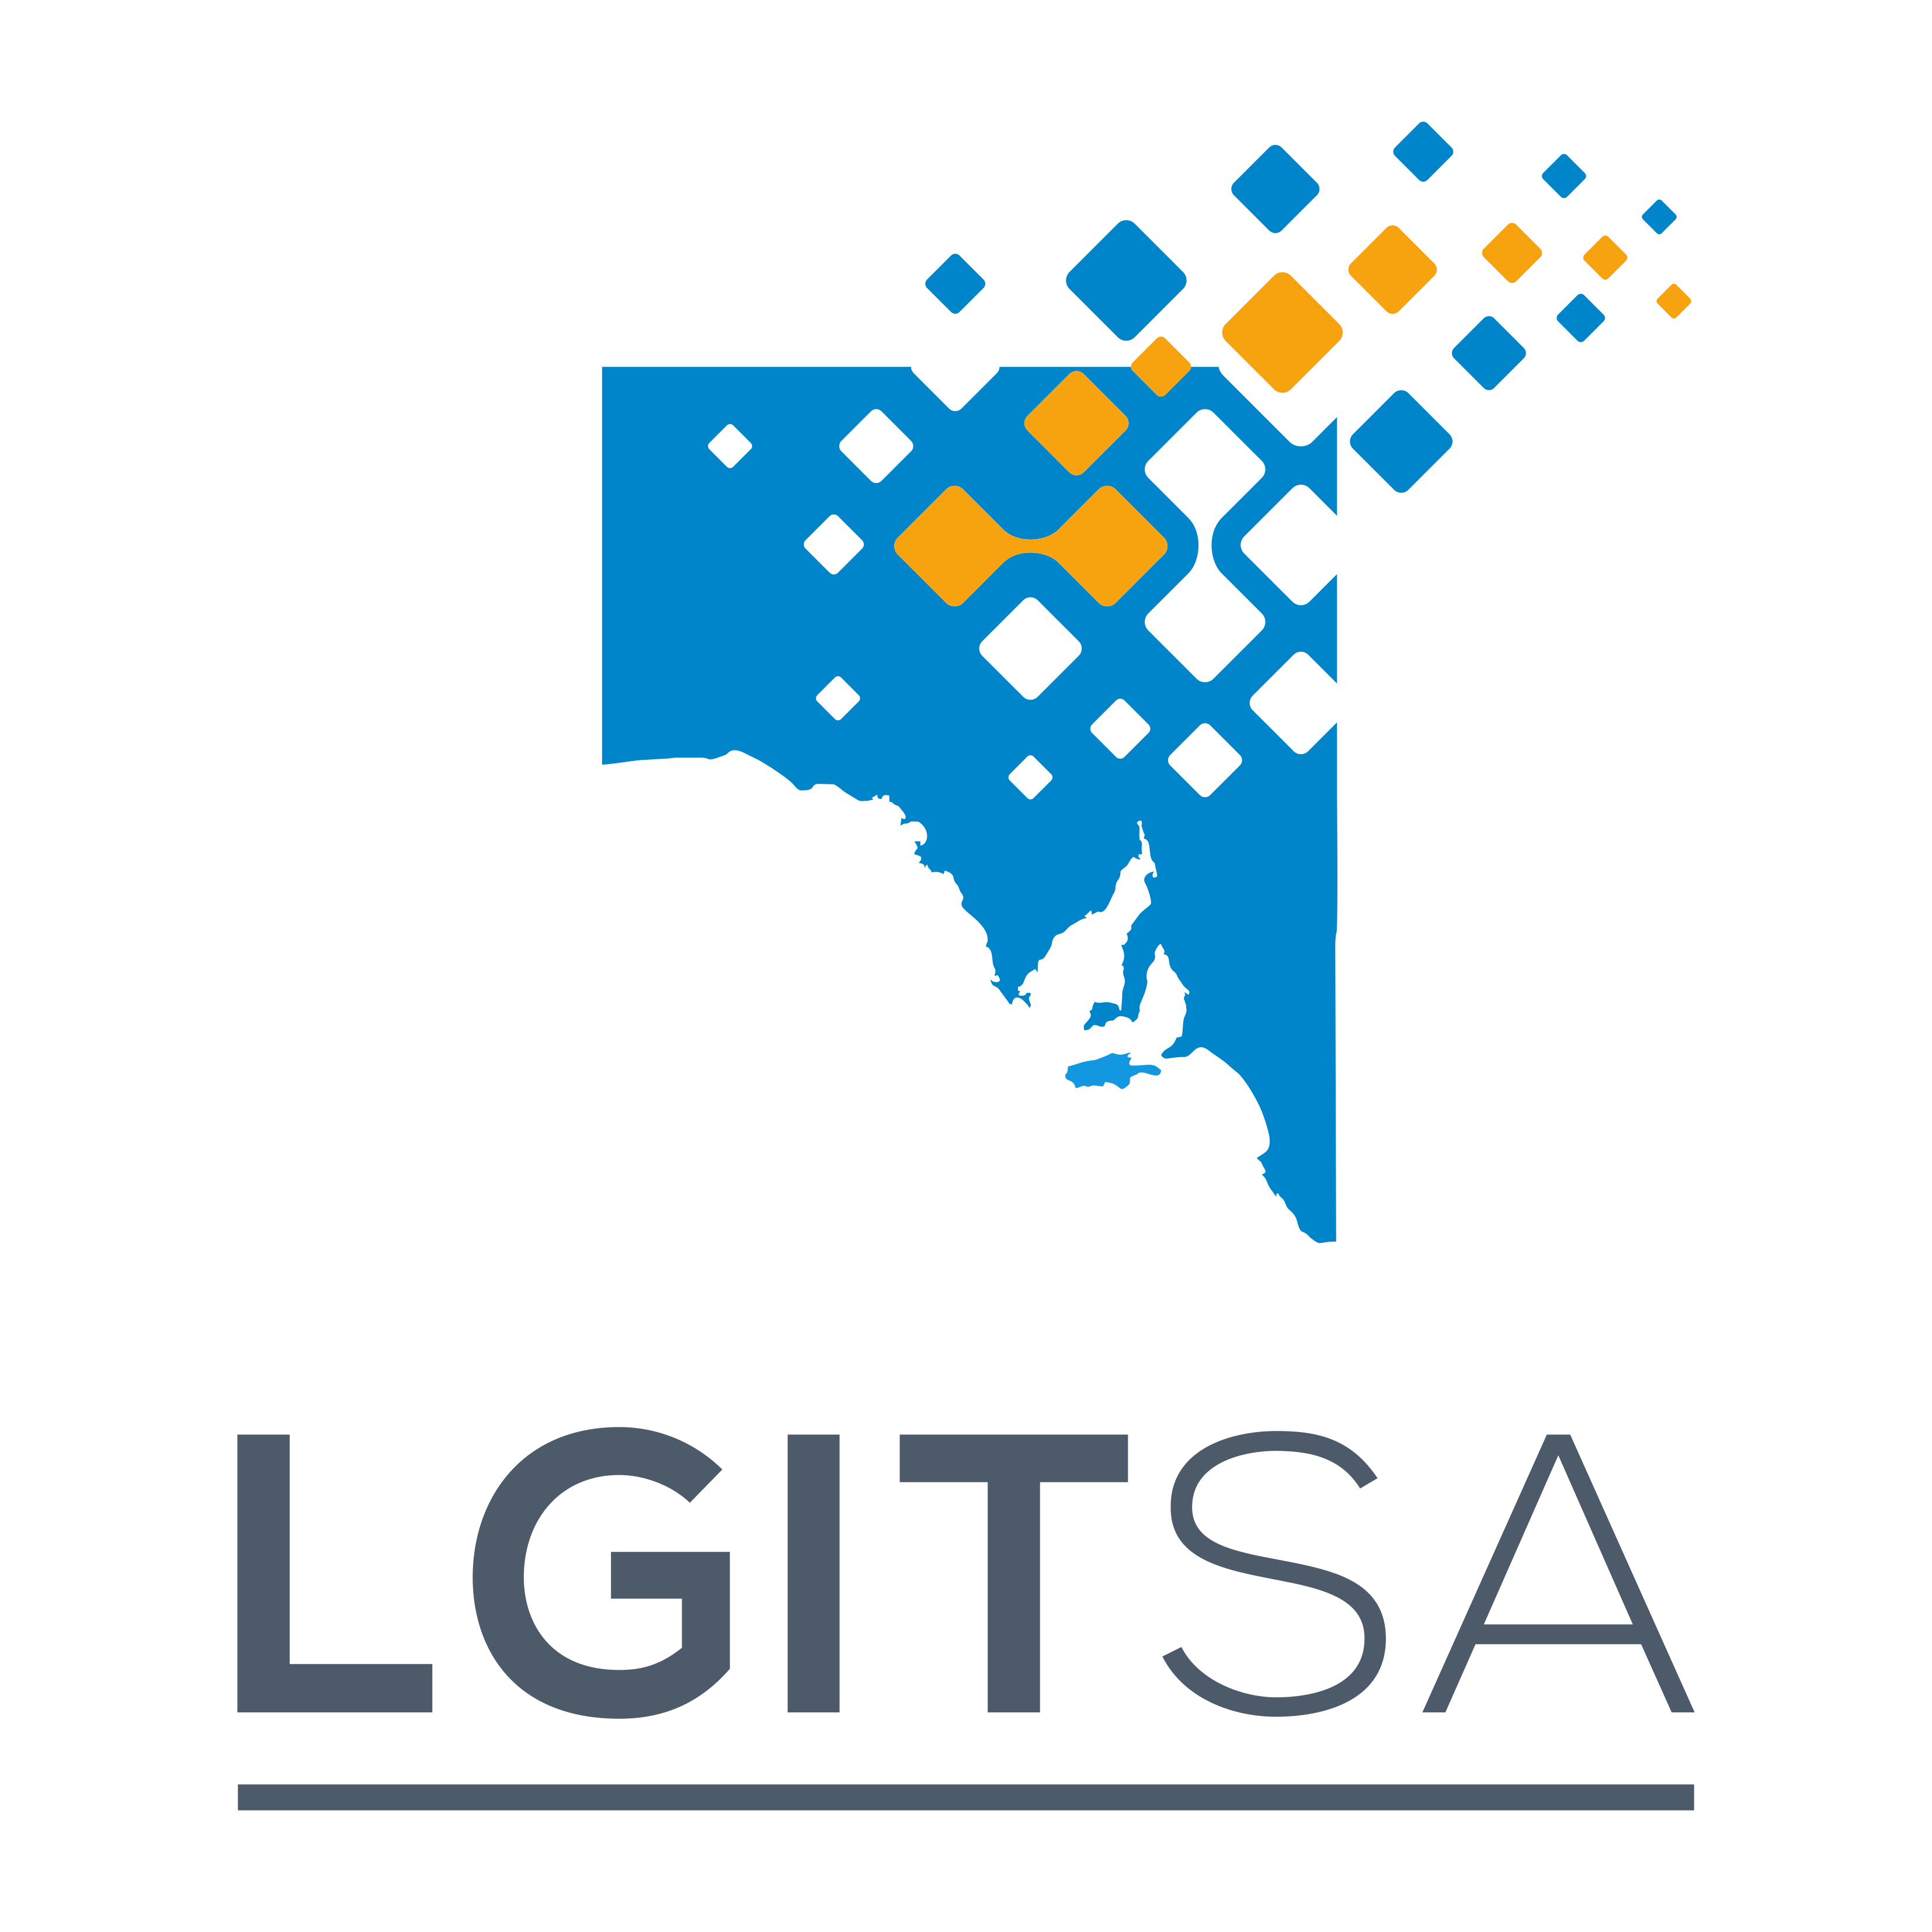 LGITSA - 2019 New Logo